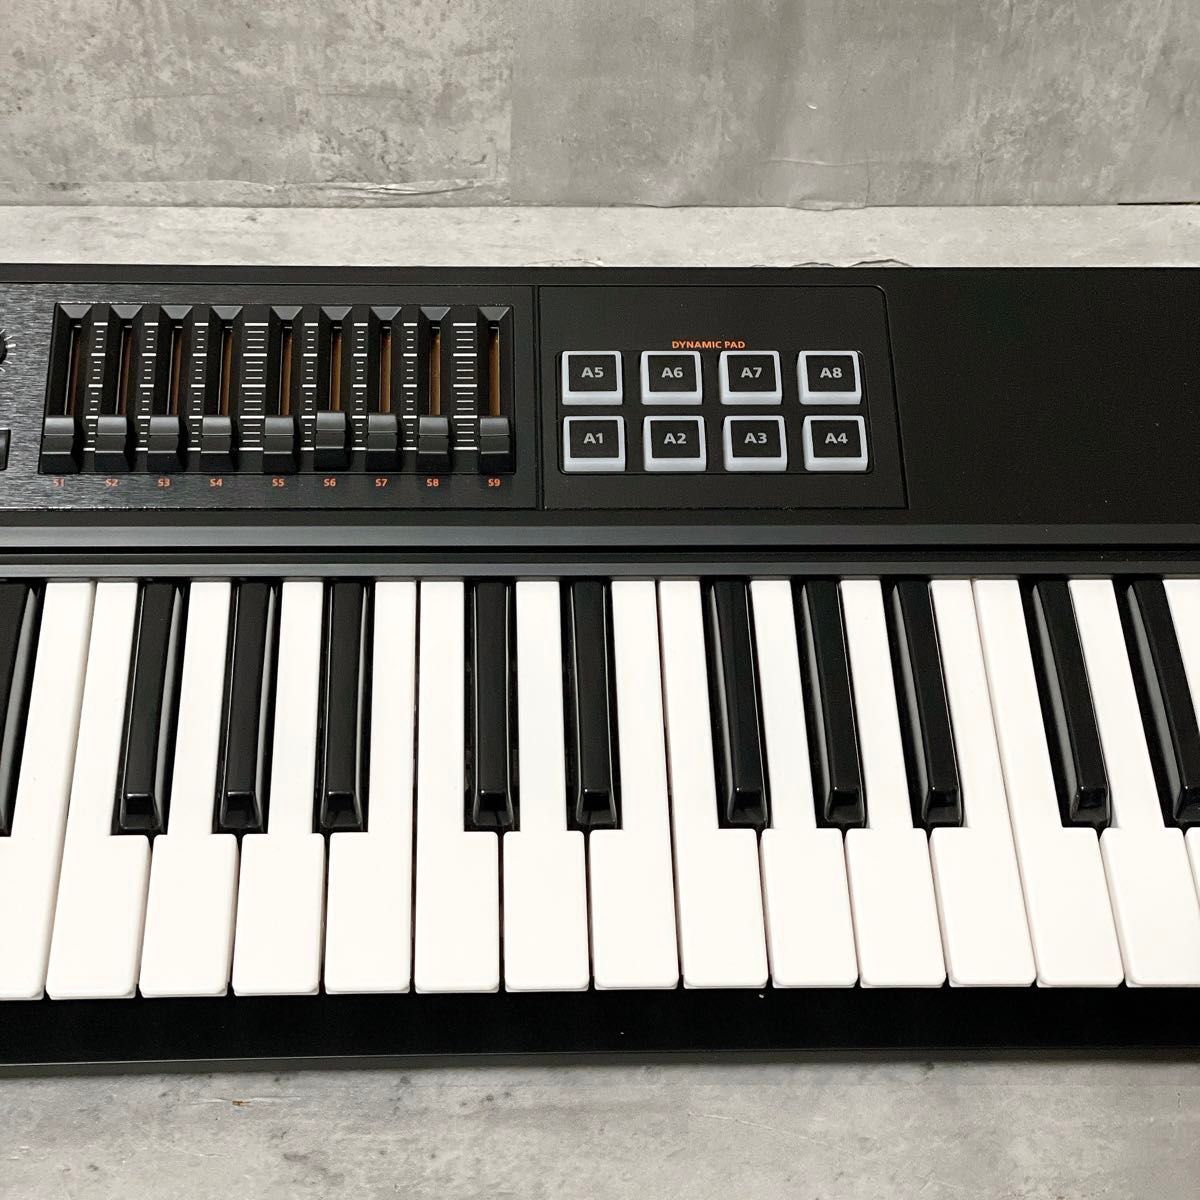  прекрасный товар Roland Roland MIDI клавиатура контроллер A-800PRO-R 61 клавиатура A-800PRO клавишные инструменты композиция удар включено 